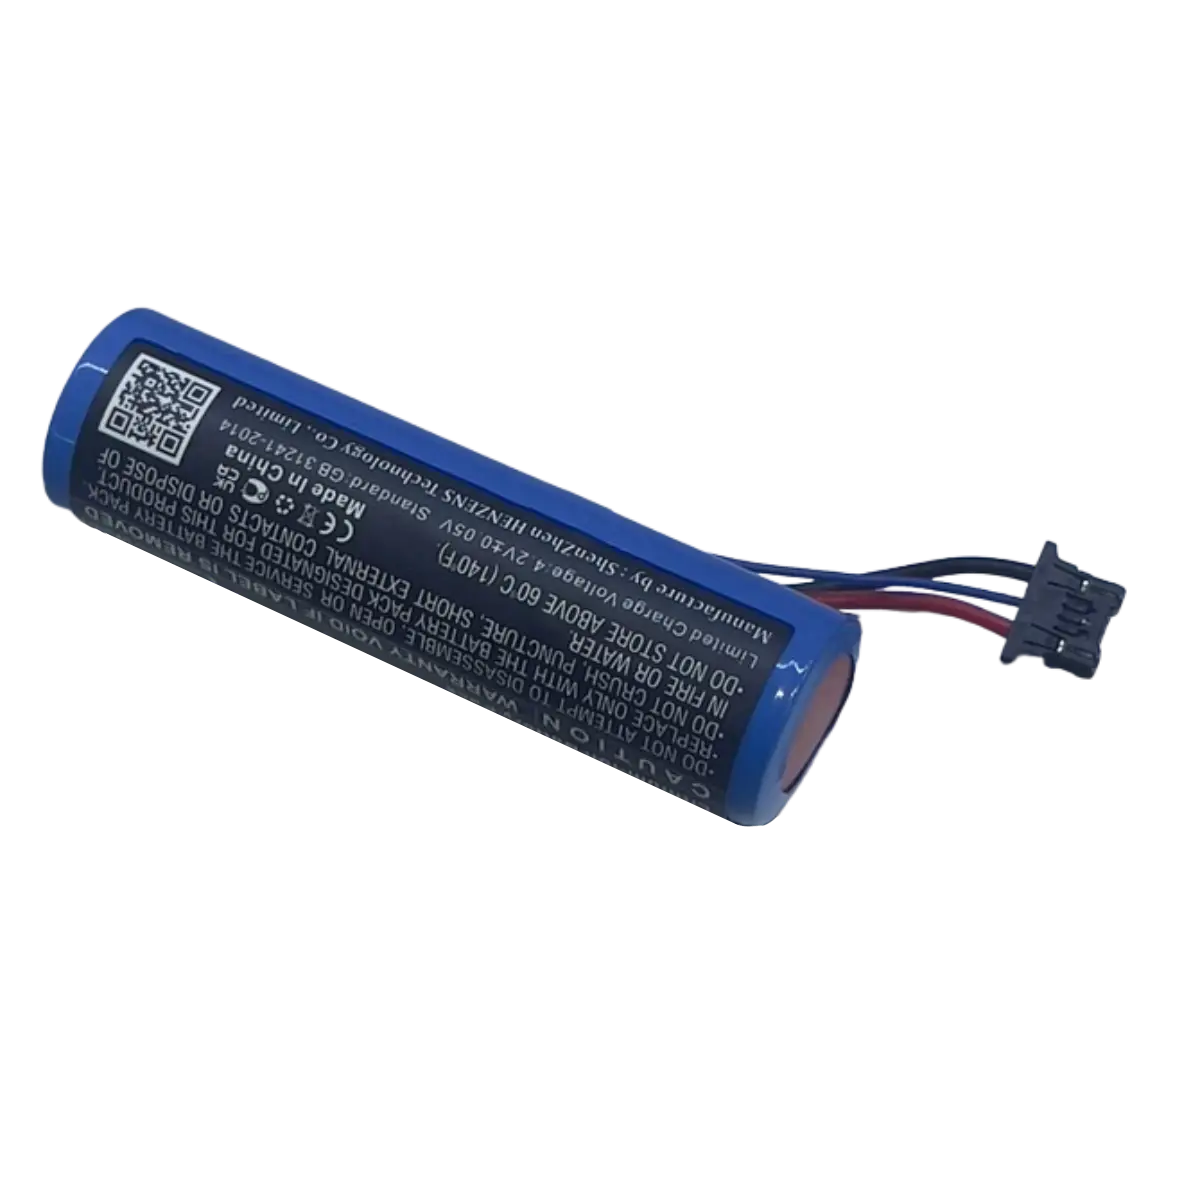 Batterie BPK474-001 pour Lecteur Verifone 3GBWC et V240m Plus